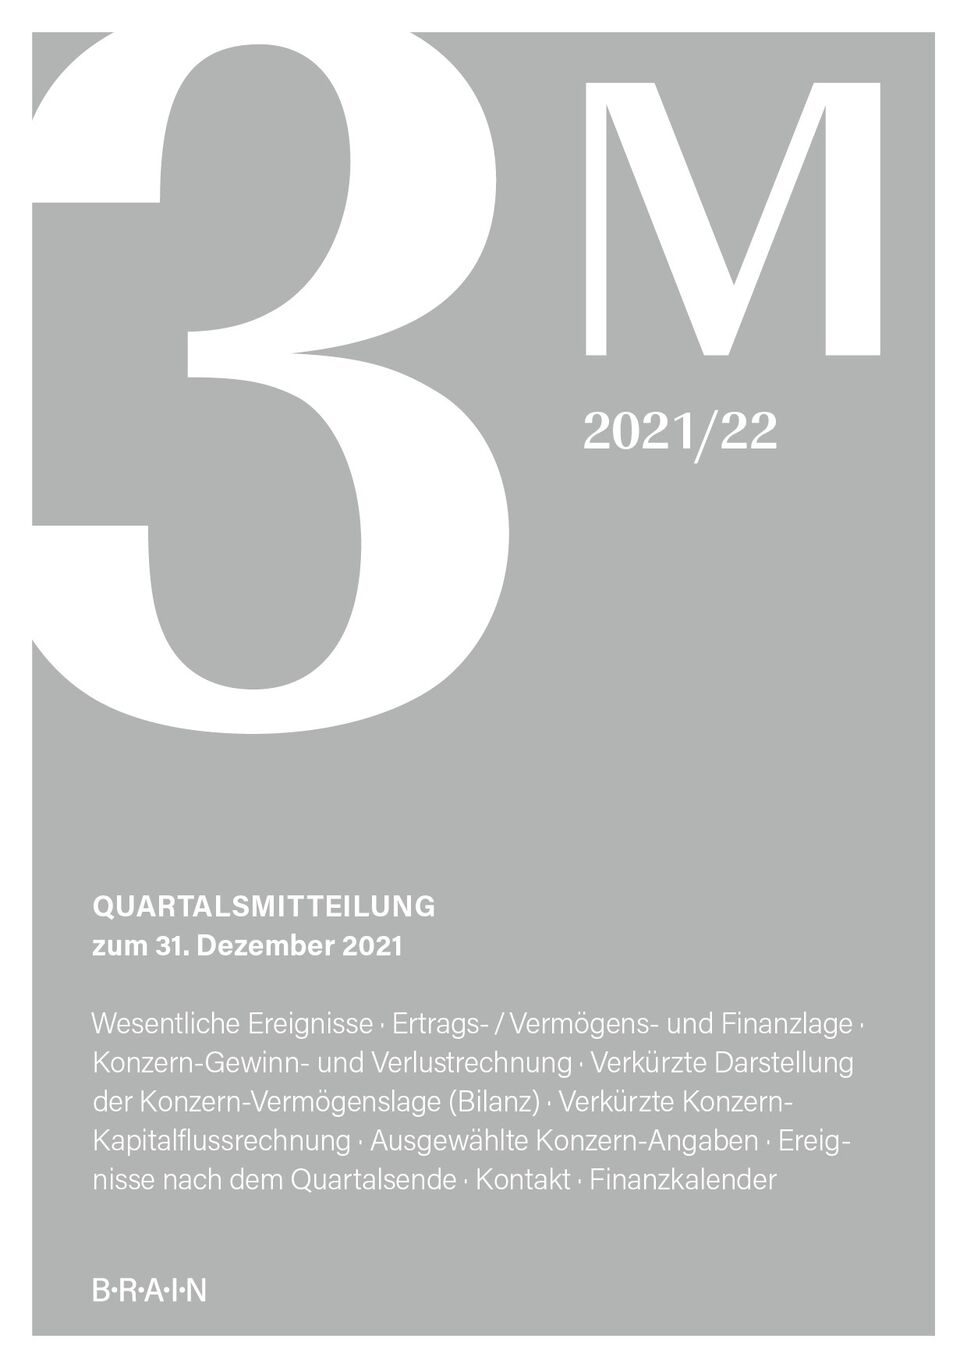 BRAIN Quartalsmitteilung 3 M 2021 22 DE cover